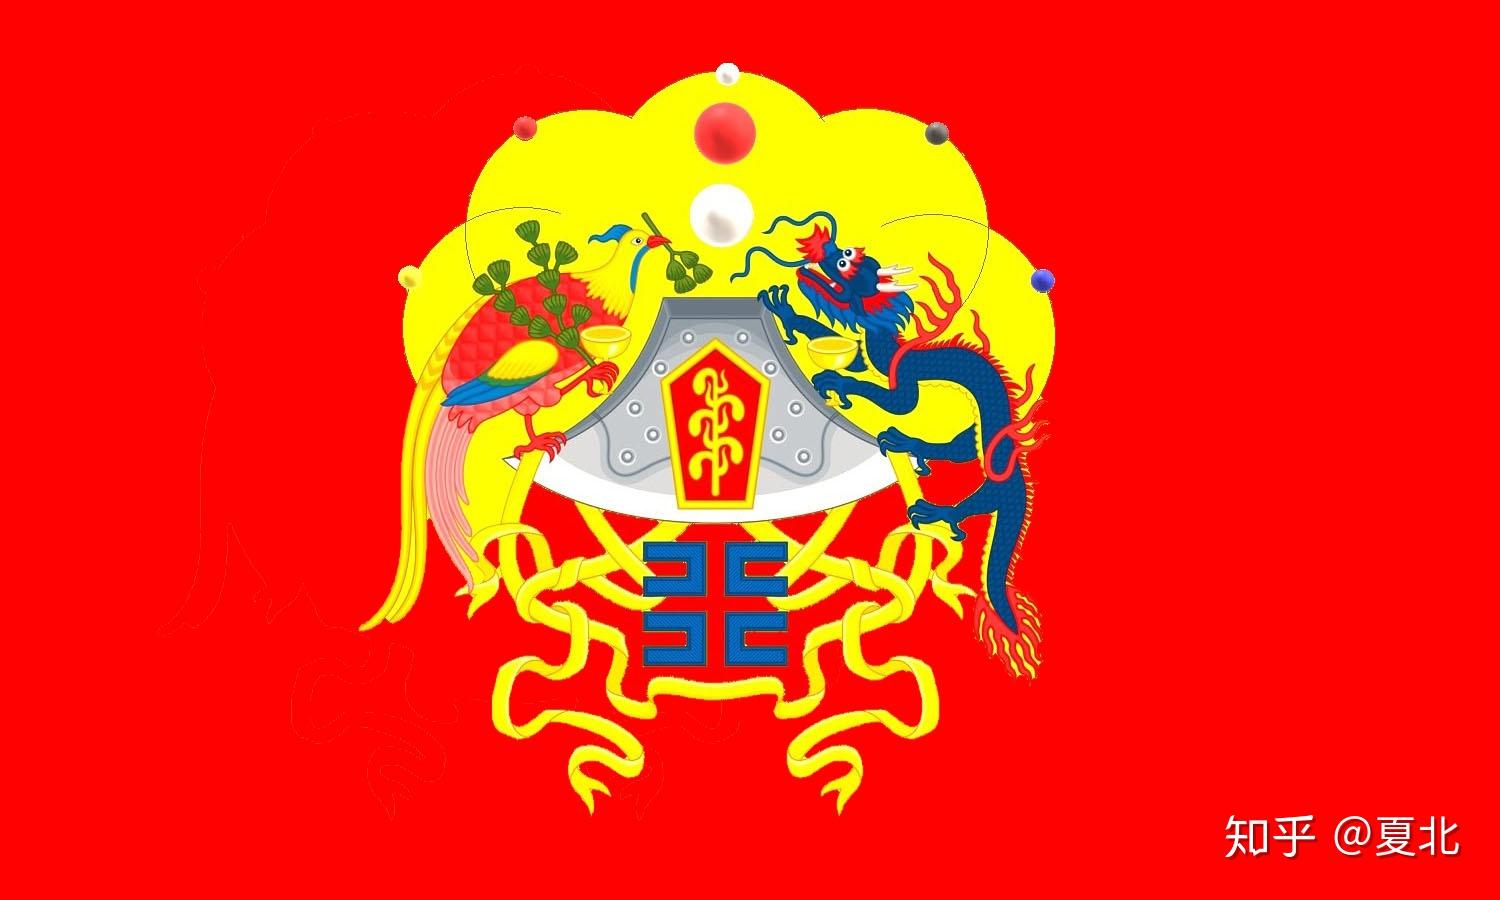 明王朝国旗图片